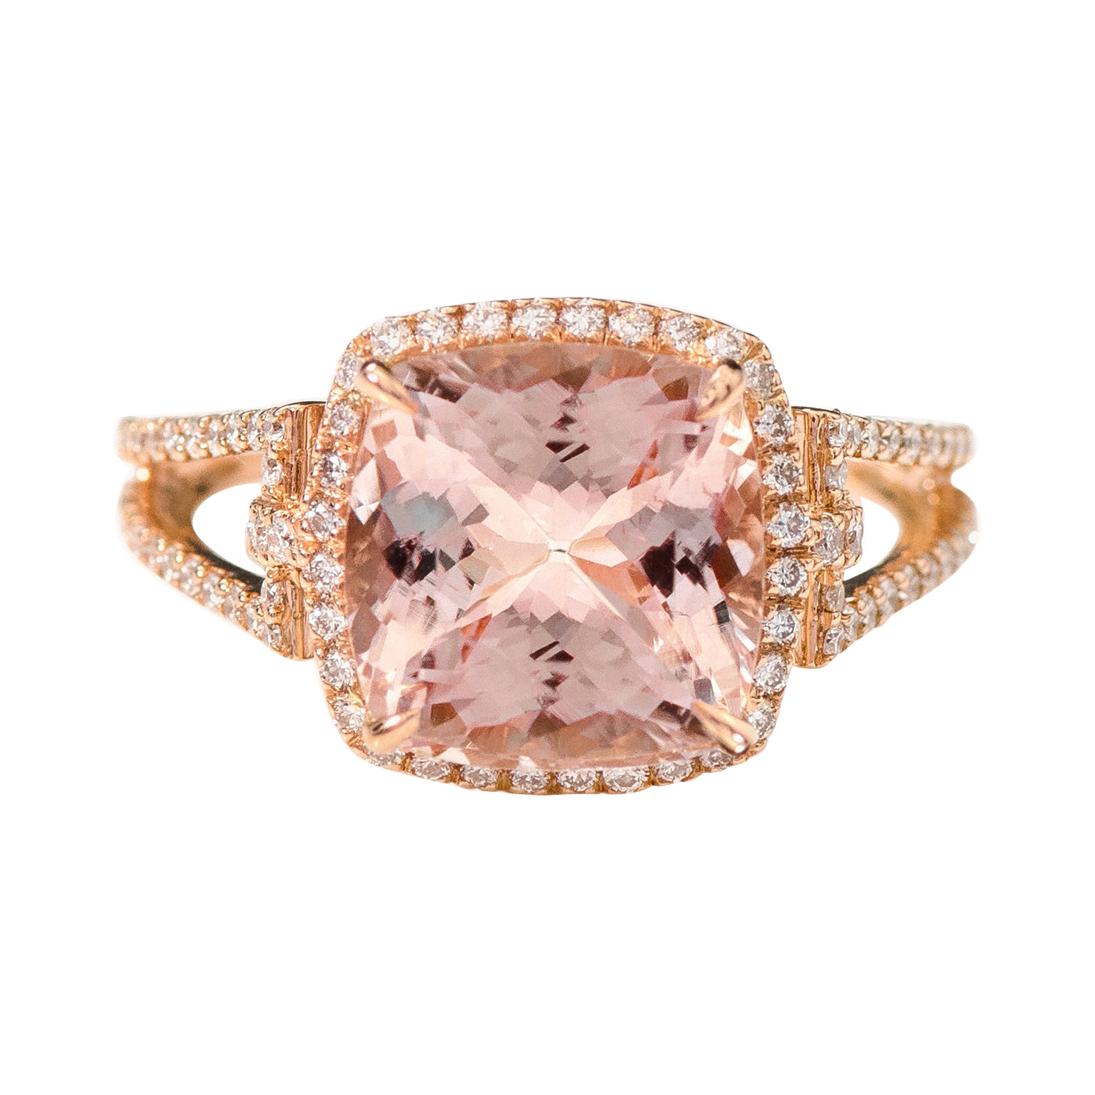 18Karat Rose Gold 4.05 Carat Cushion-Cut Pink Morganite and Diamond Cluster Ring